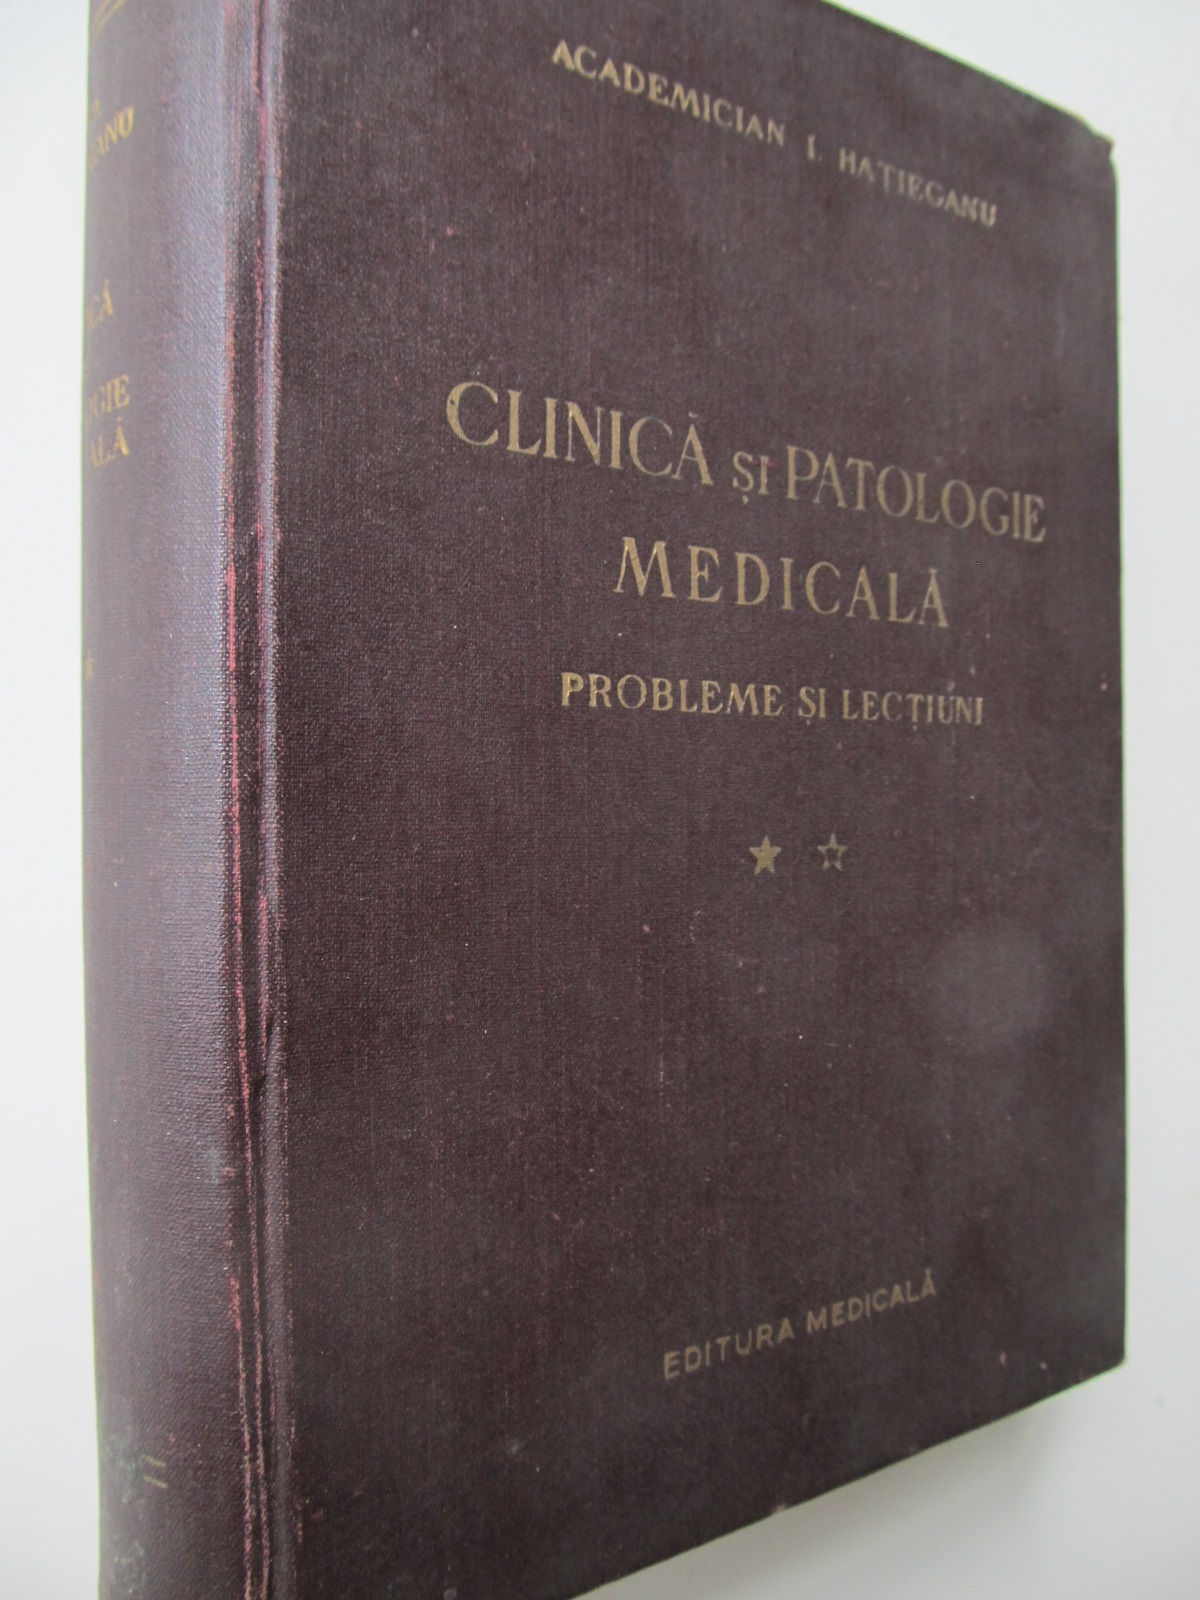 Clinica si patologie medicala (vol. 2) - Probleme si lectiuni , 1958 - I. Hatieganu , i. N. Boeriu , ... | Detalii carte